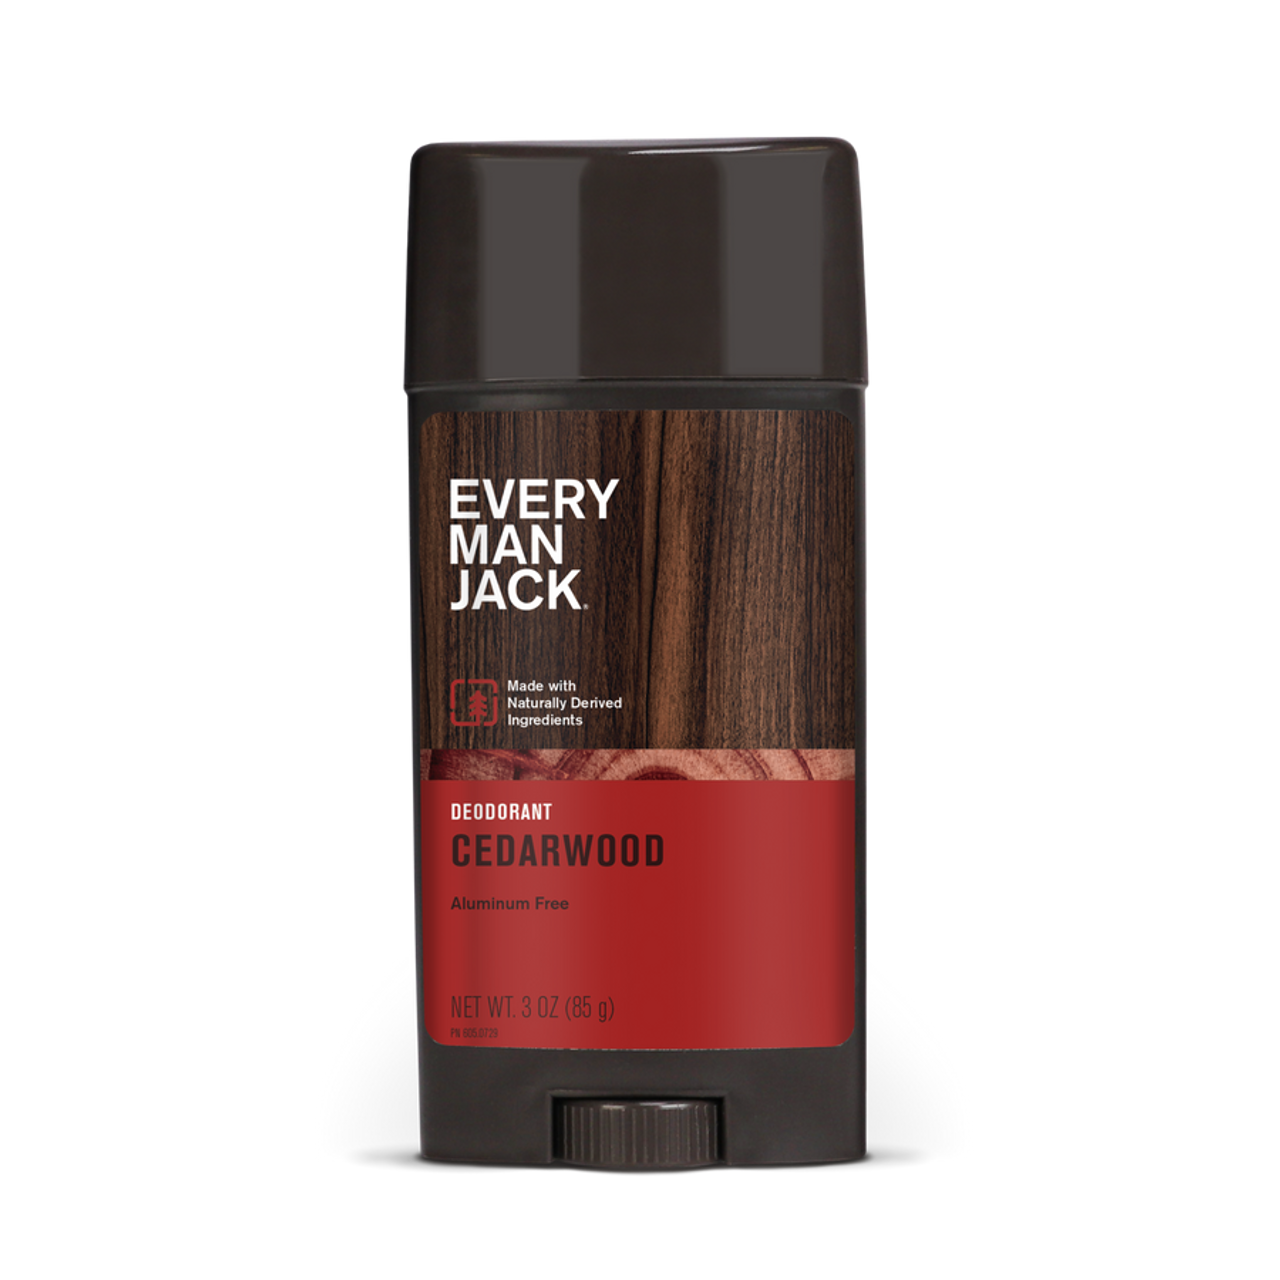 Every Man Jack Body Deodorant, Cedarwood, 3 Oz